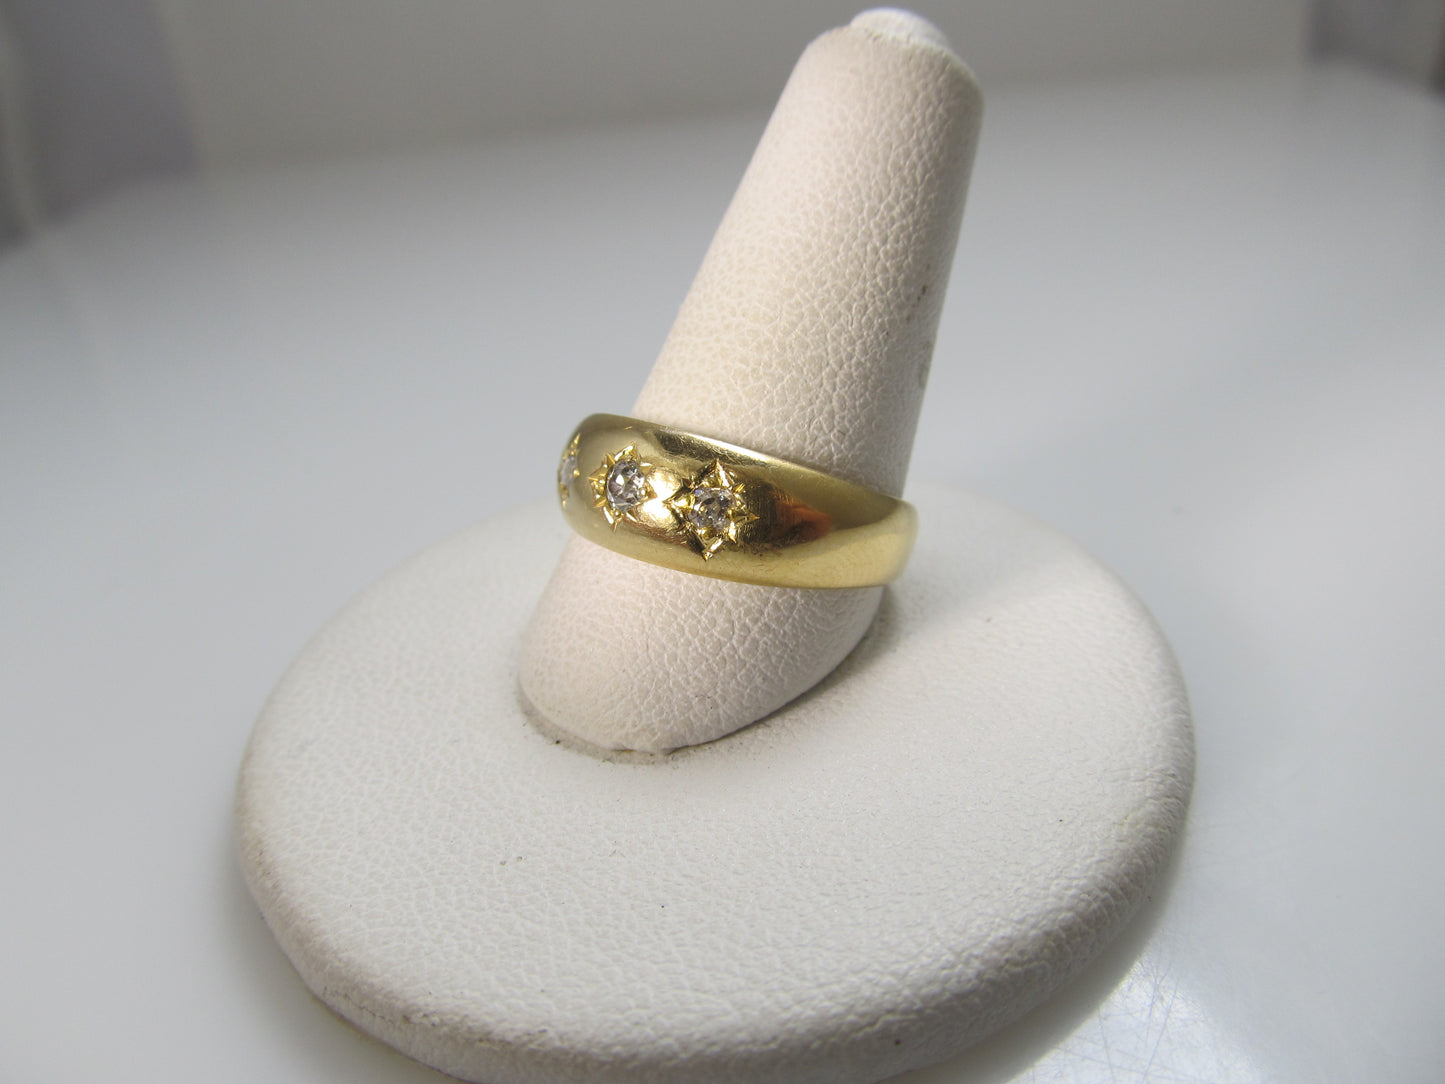 18k yellow gold three diamond ring dated 1892